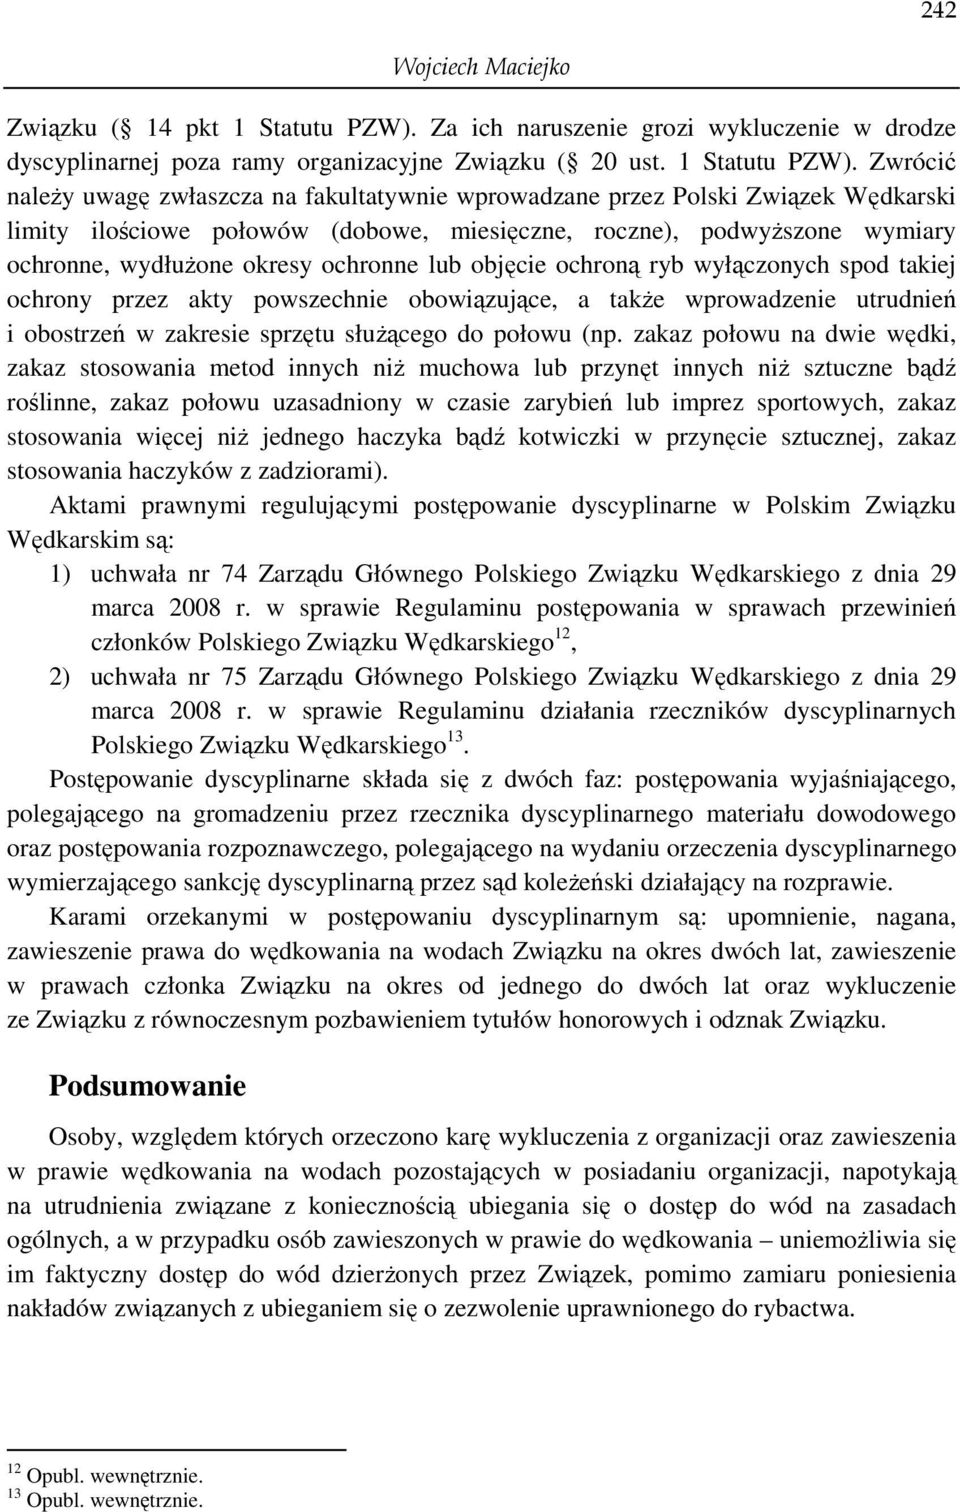 Zwrócić naleŝy uwagę zwłaszcza na fakultatywnie wprowadzane przez Polski Związek Wędkarski limity ilościowe połowów (dobowe, miesięczne, roczne), podwyŝszone wymiary ochronne, wydłuŝone okresy